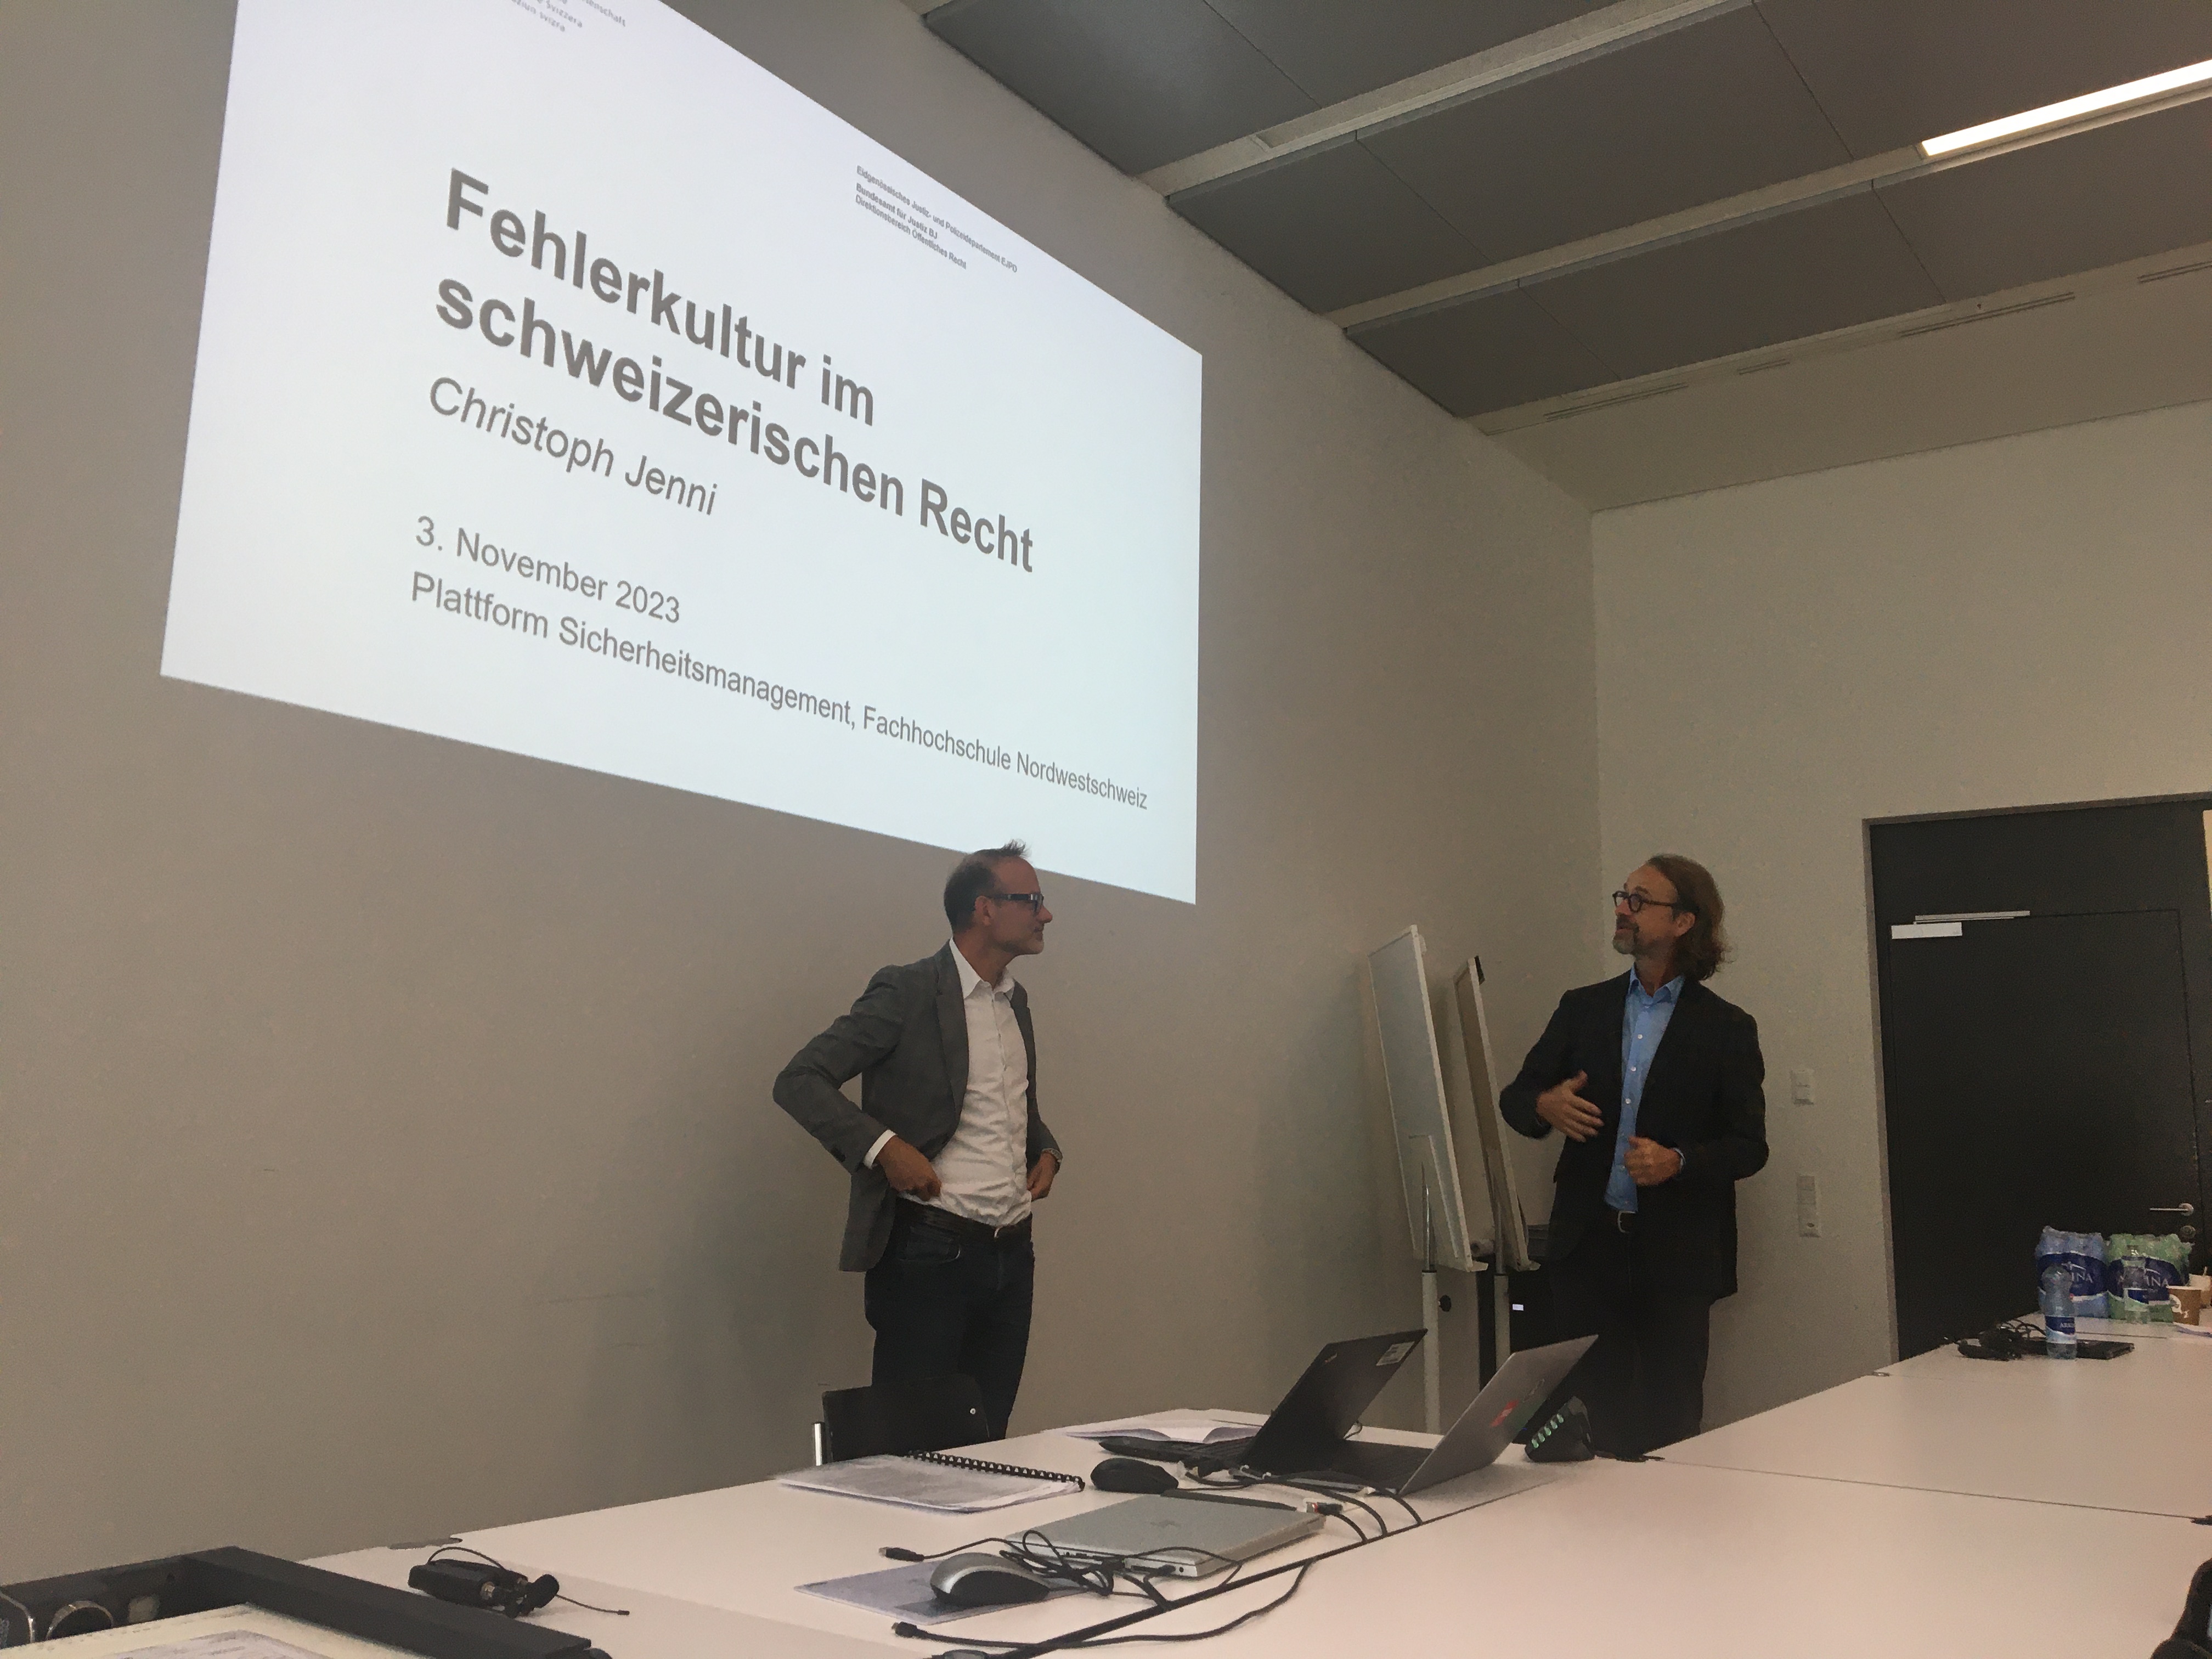 Christoph Jenni und Frank Ritz stehen vorne vor einer Leinwand. Auf der Leinwand ist eine Powerpoint-Präsentation zu sehen. Darauf steht der Titel: "Fehlerkultur im Schweizerischen Recht"